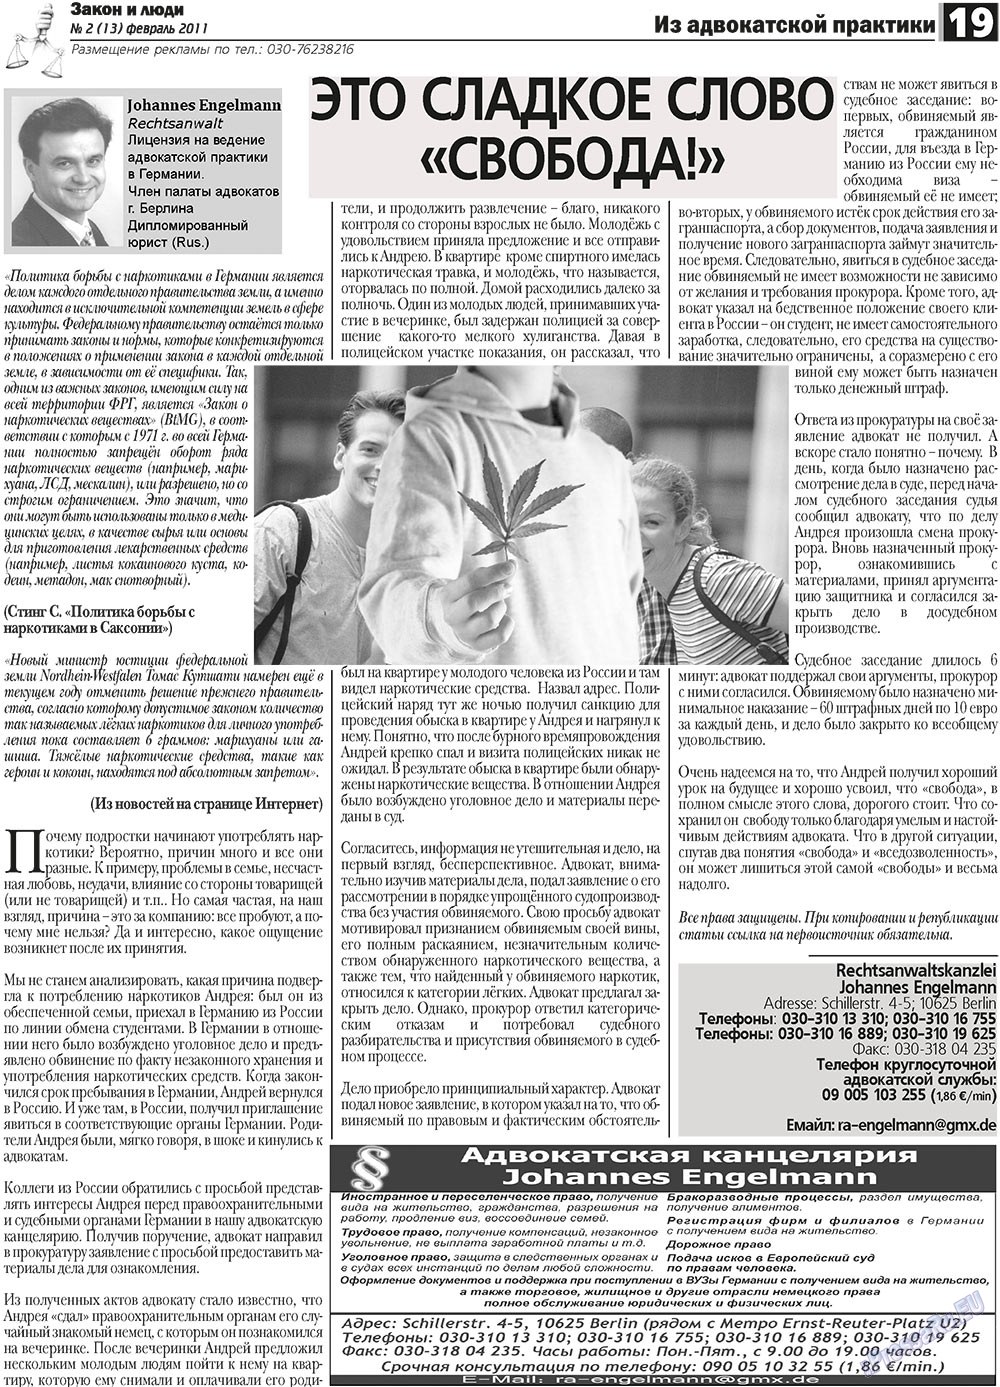 Закон и люди, газета. 2011 №2 стр.19